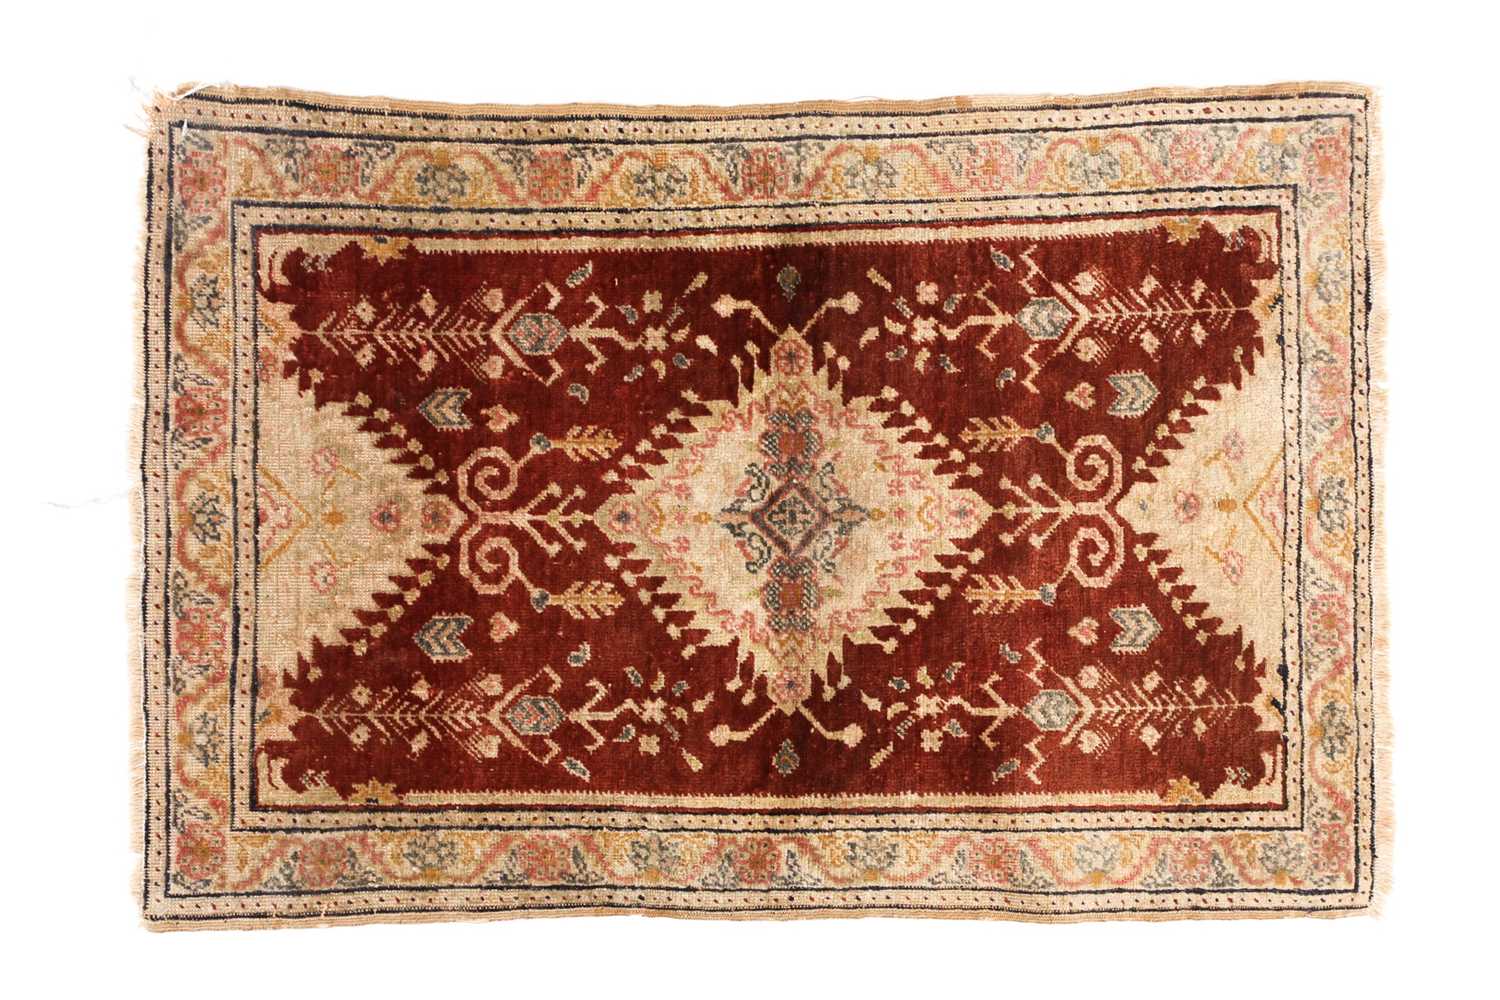 Lot 128 - An antique Turkish rust-red ground silk mat...